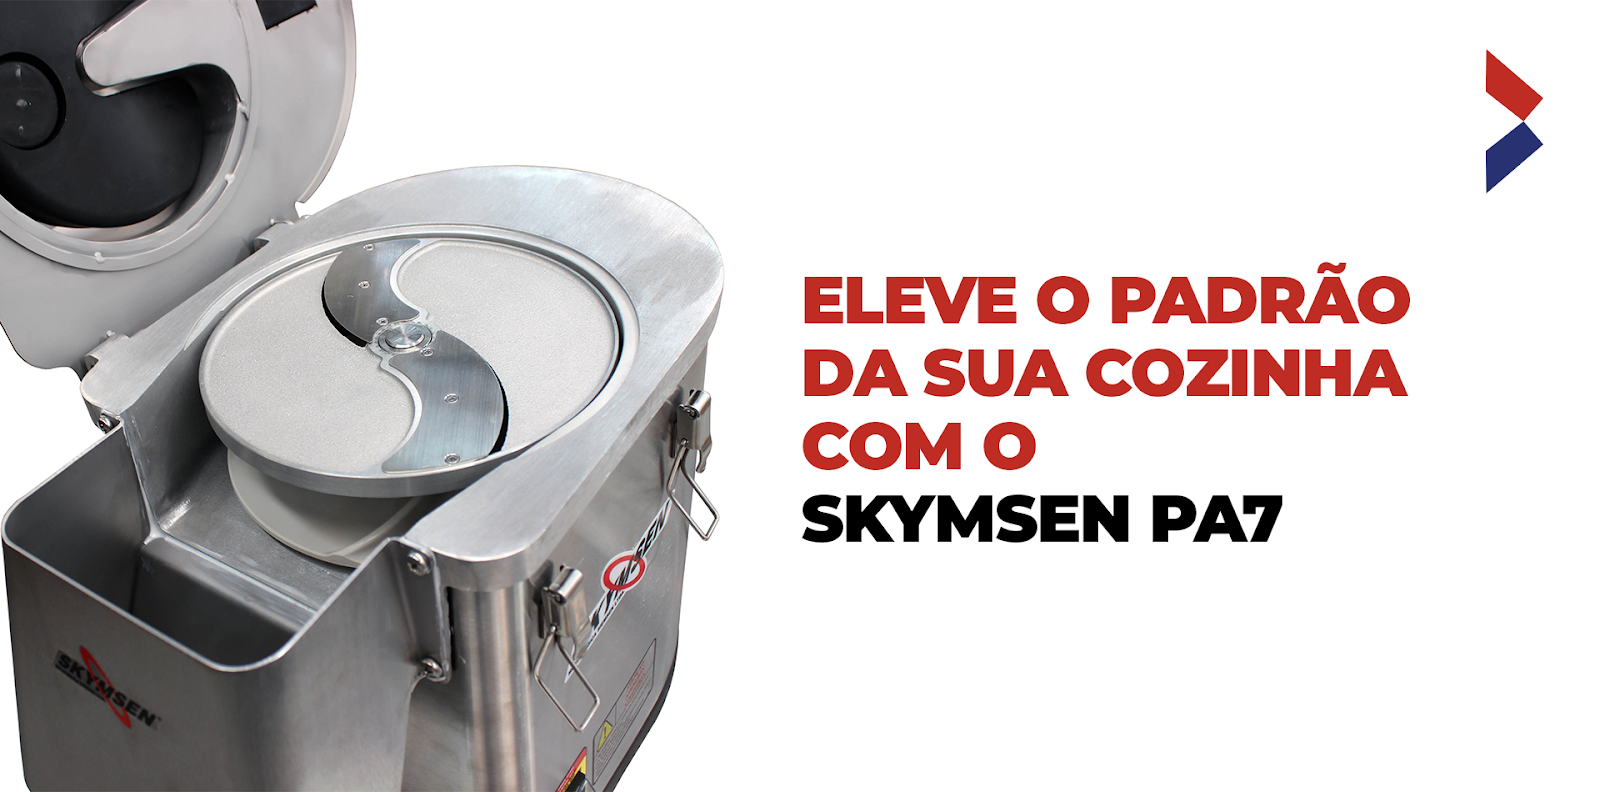 Eleve o padrão da sua cozinha com o Skymsen PA7